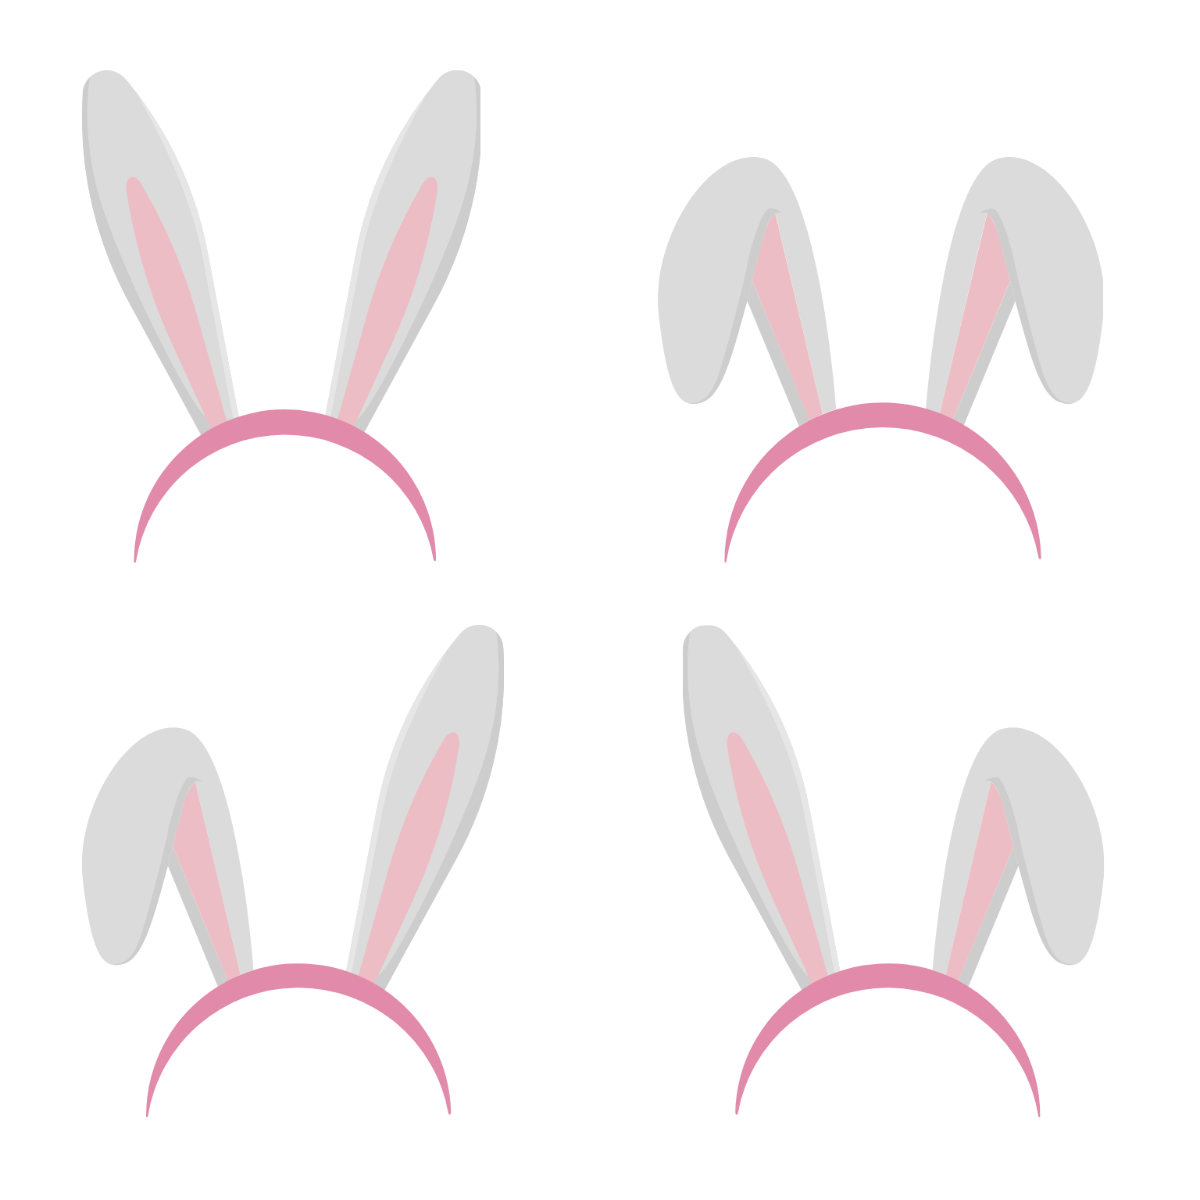 Bunny Ears Vector Template